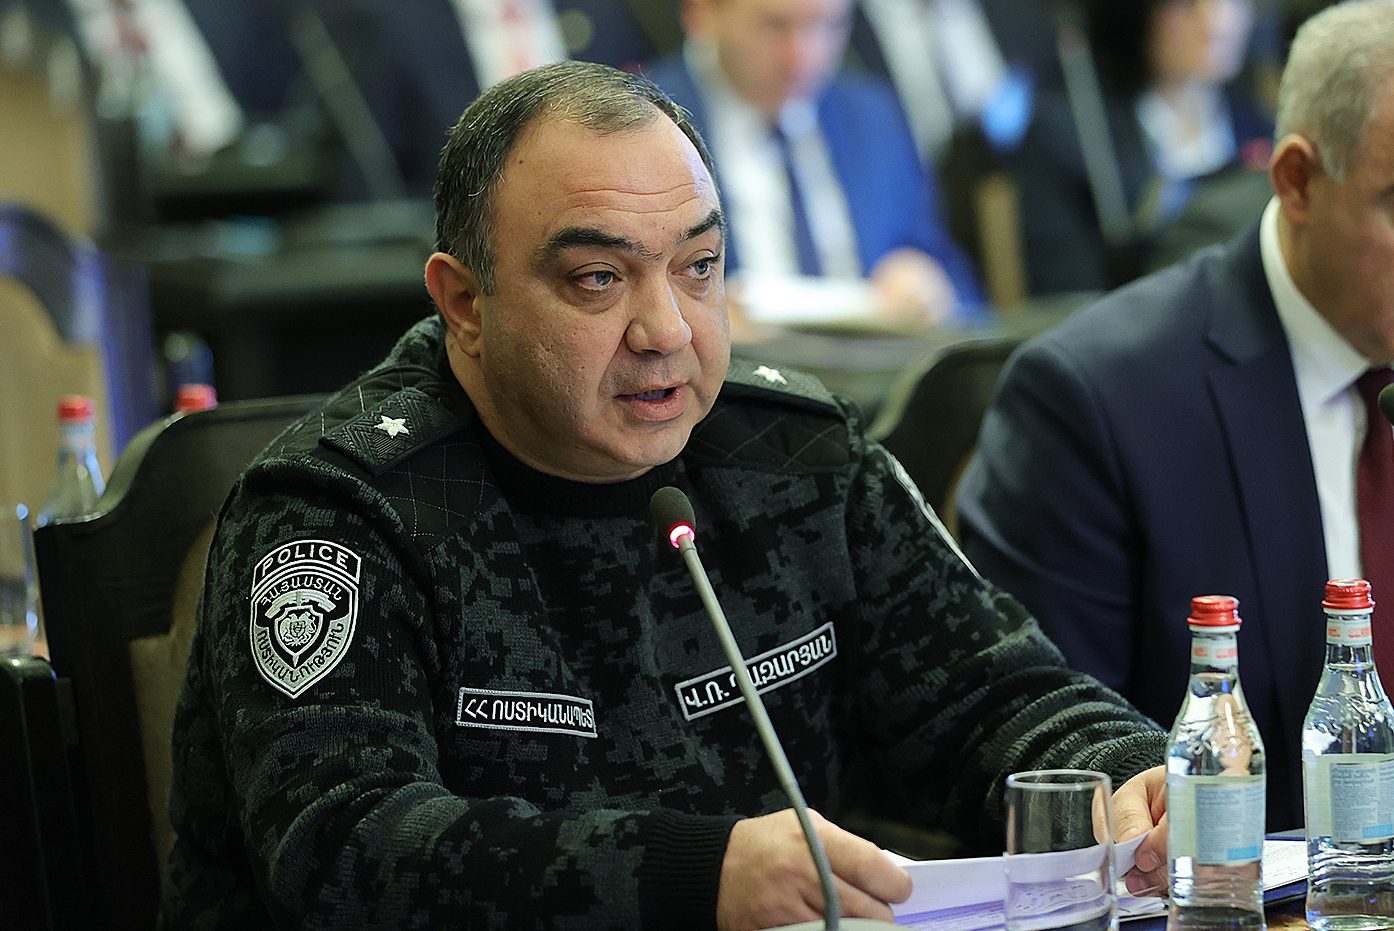 Ոստիկանապետն ու փոխոստիկանապետը կմեկնեն Ղրղզստան․ վարչապետի որոշում